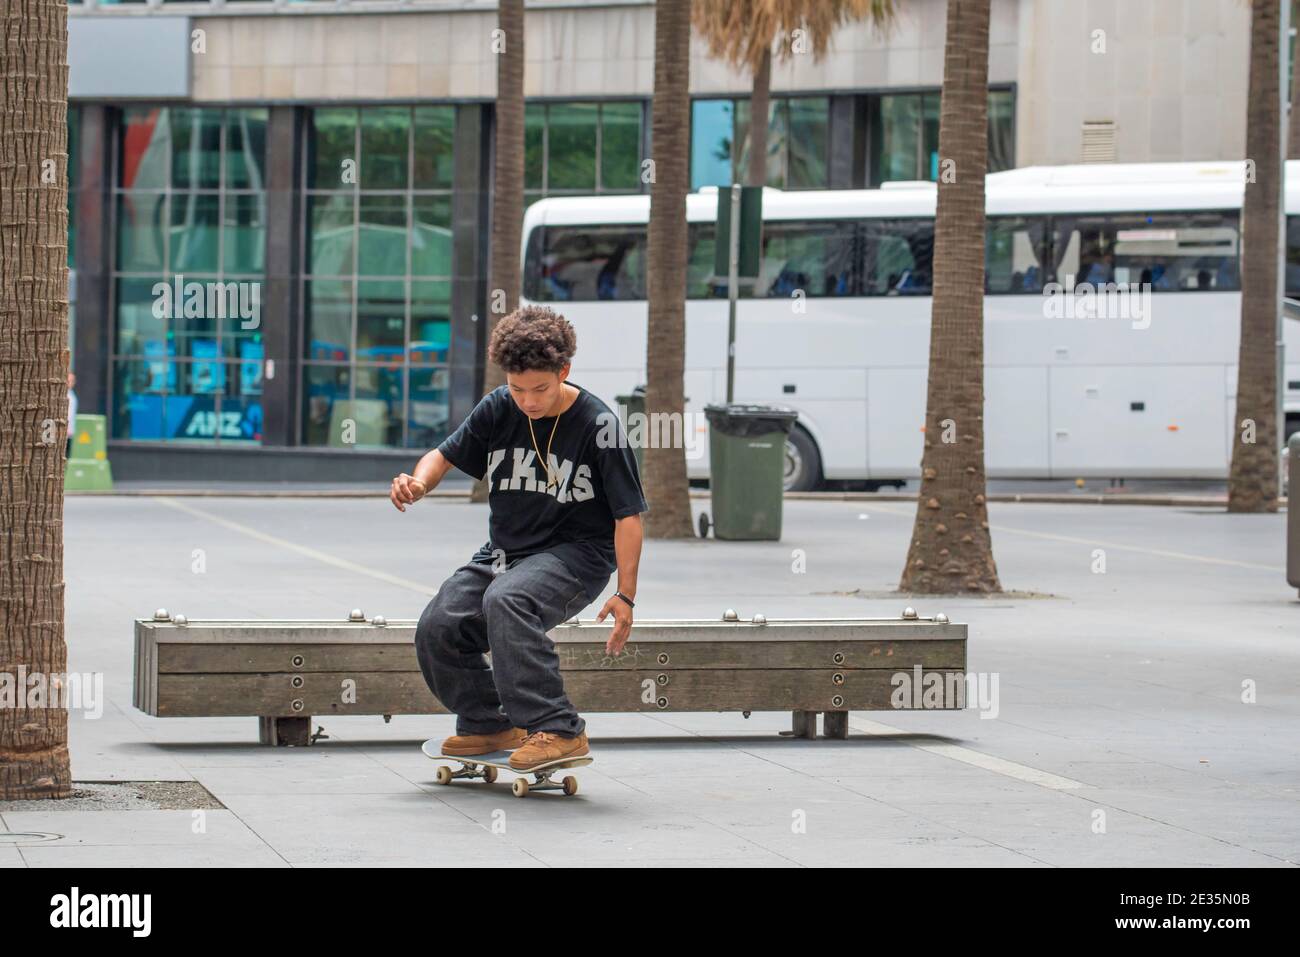 Un jeune coureur de skateboard australien effectue un flip ou une ollie sur un banc de bois à Sydney, en Australie (séquence 3 sur 3) Banque D'Images